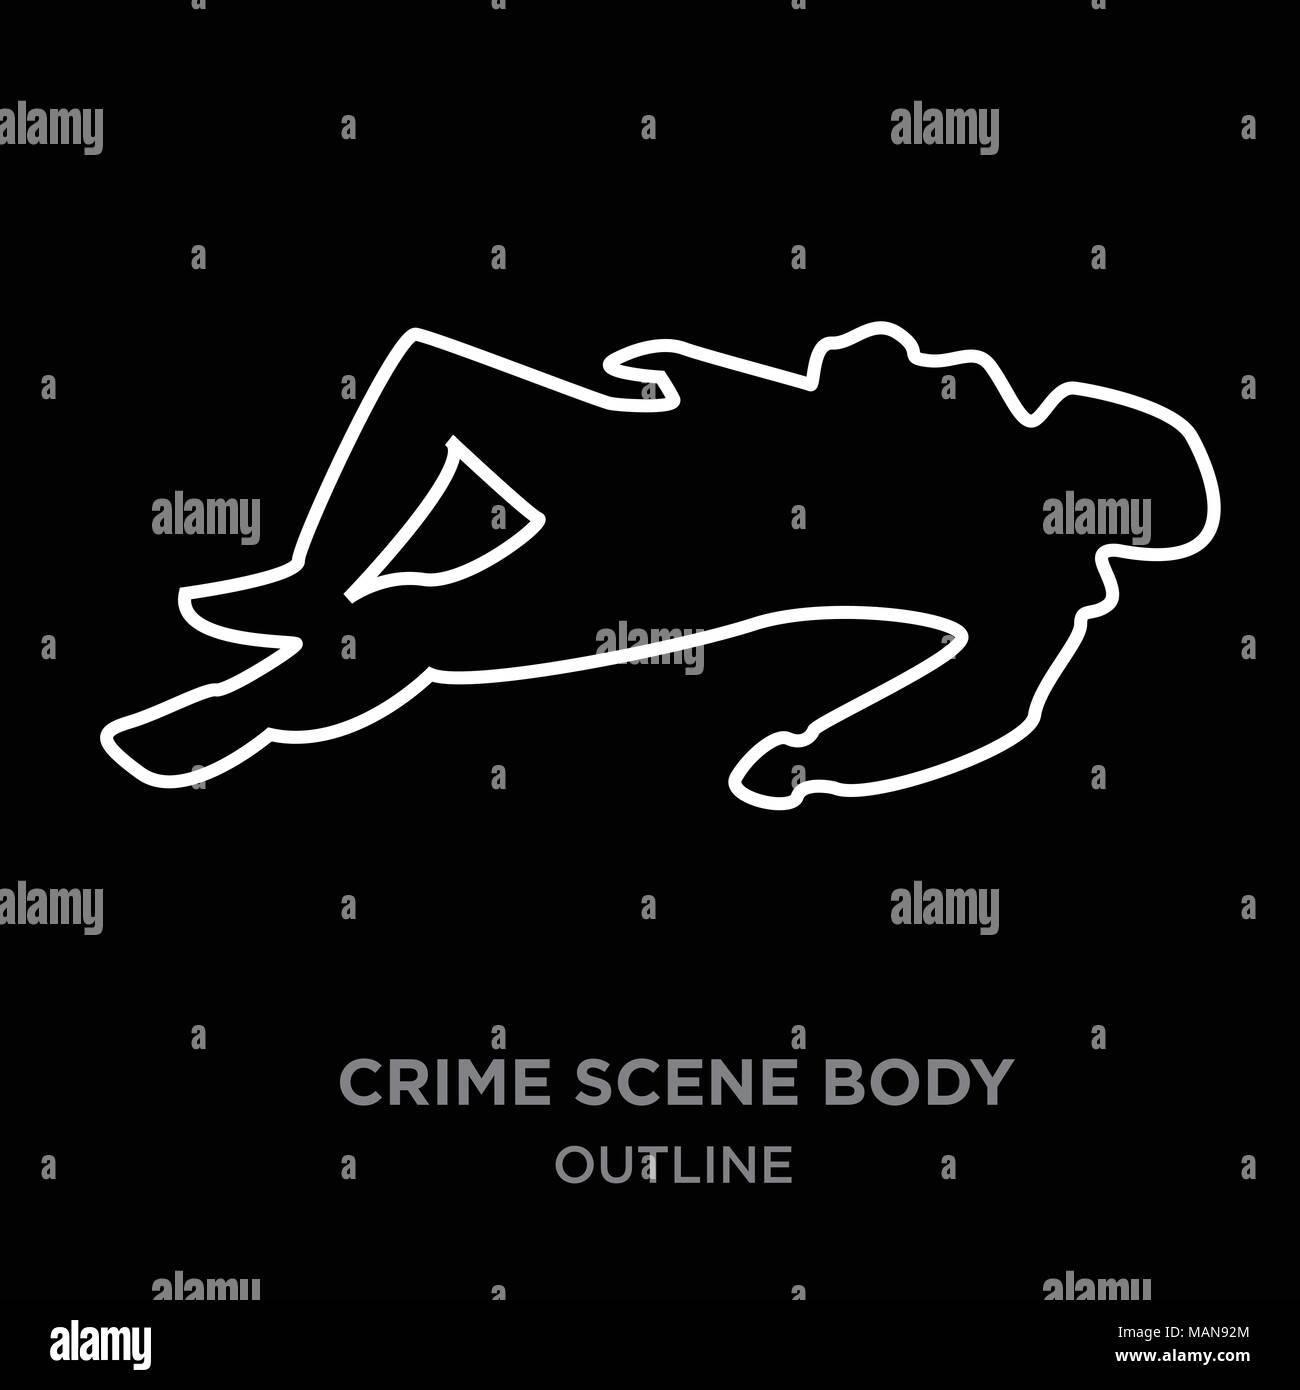 white border crime scene body outline on black background, vector illustration Stock Vector